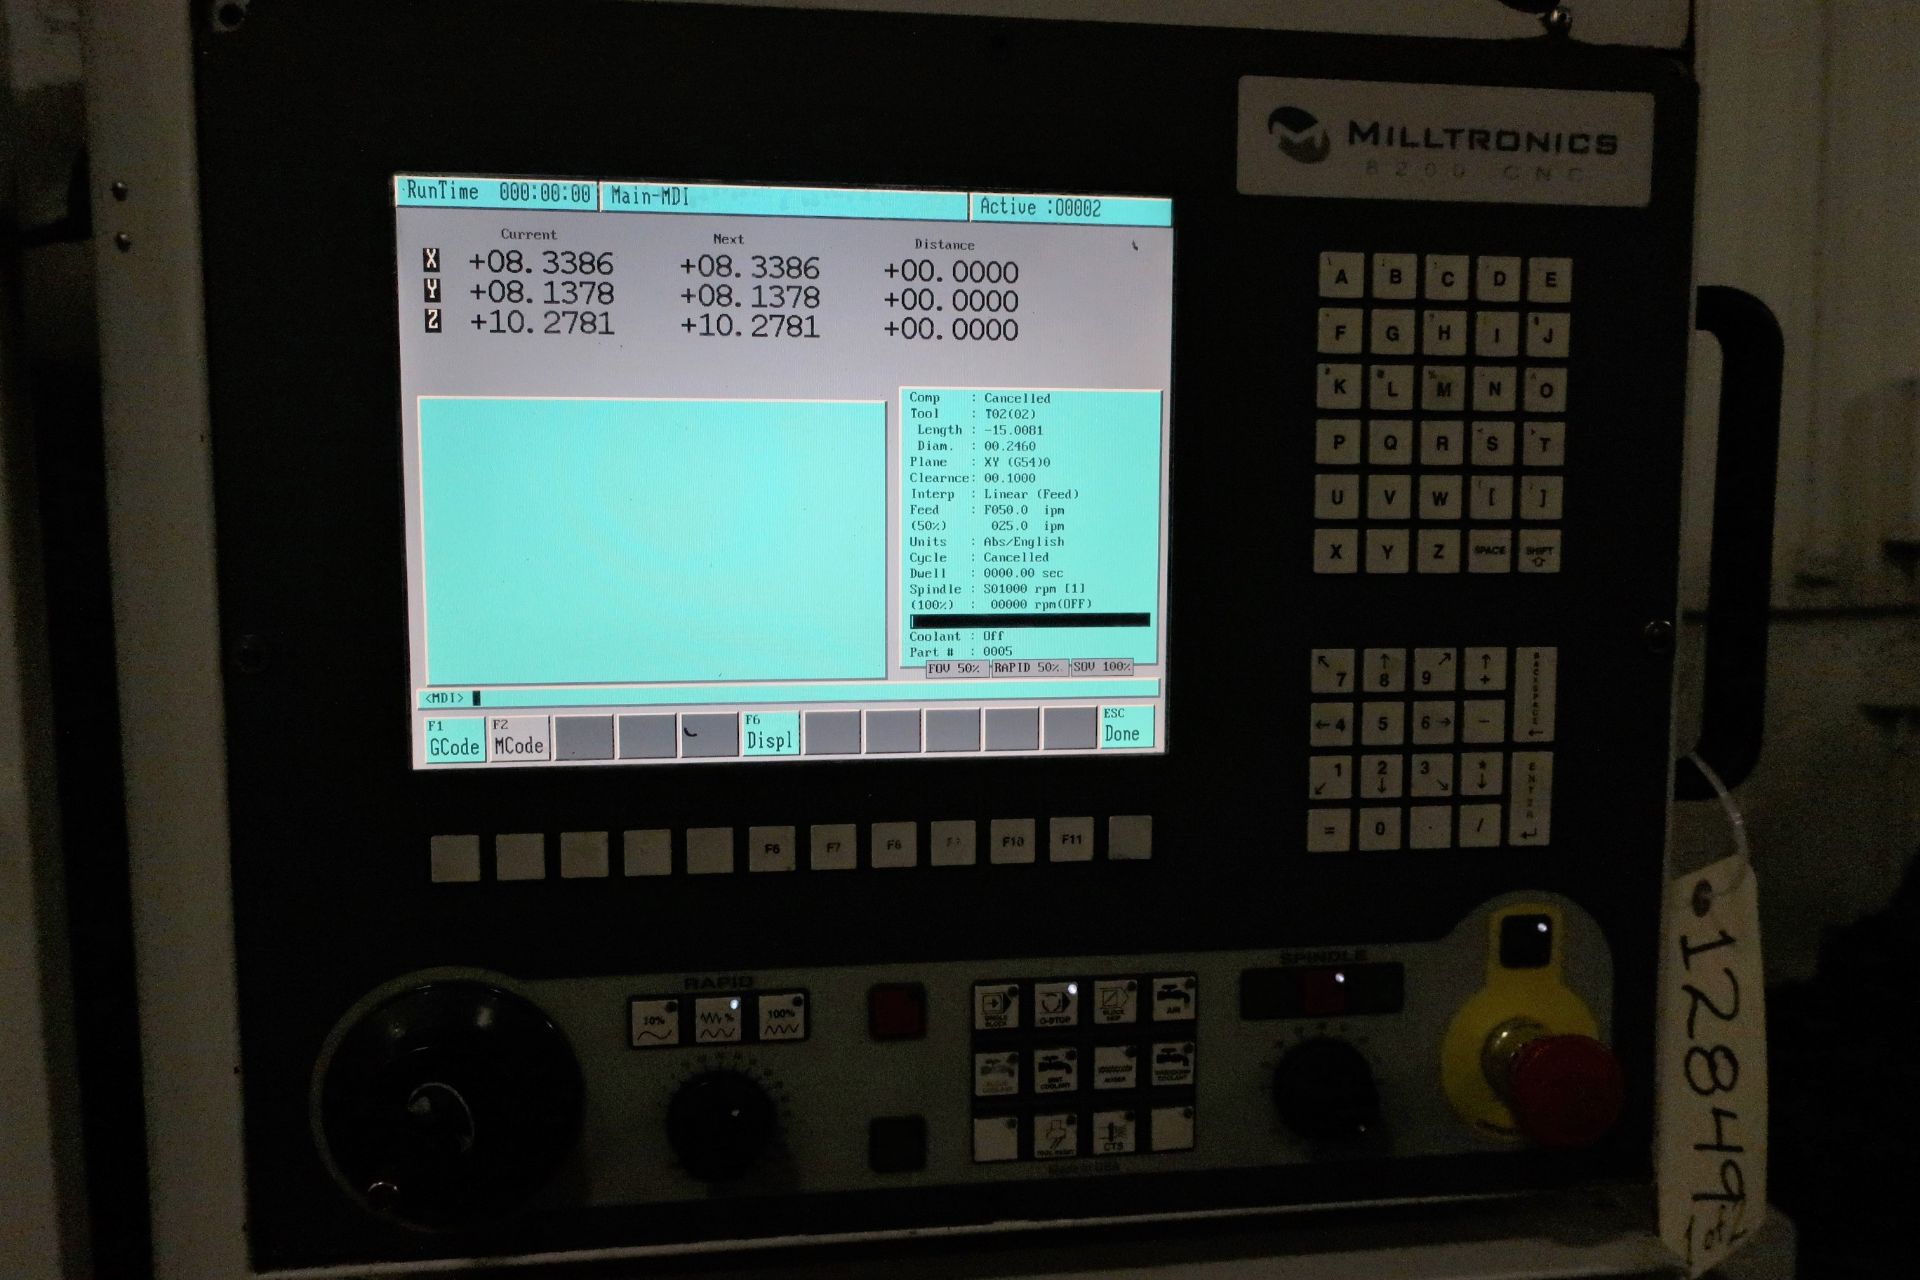 MILLTRONICS TT24 3-AXIS CNC VERTICAL MACHINING CENTER W/PALLET CHANGER, S/N 11964, NEW 2012 - Image 2 of 11